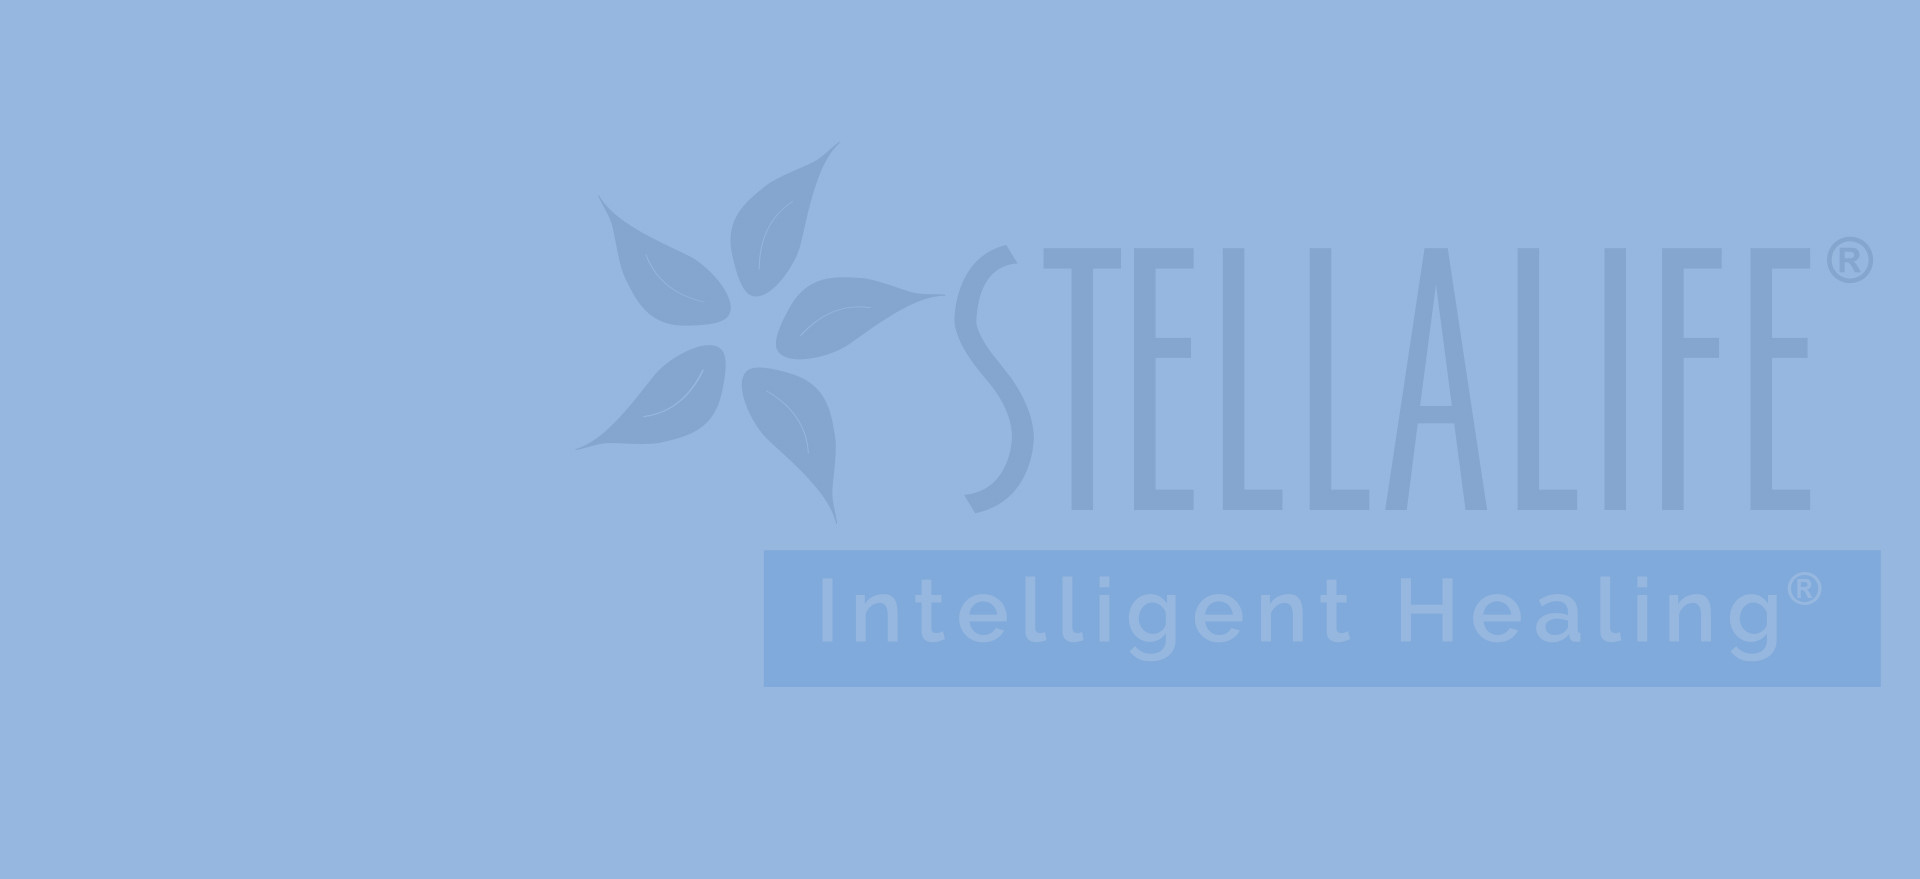 stellalife-header-graphic-1